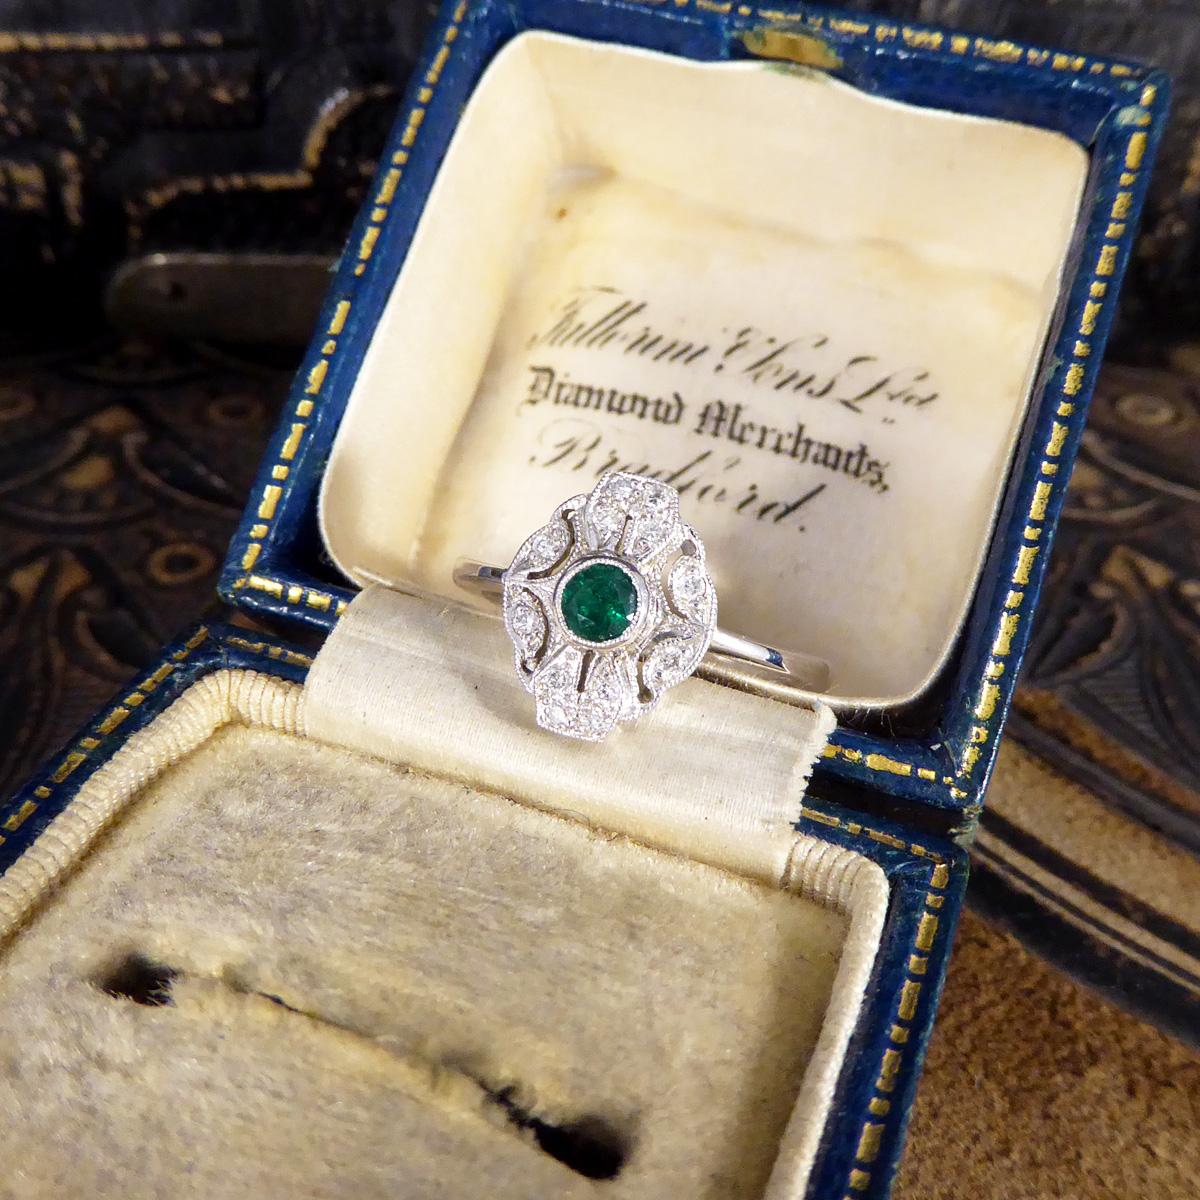 Premium Period Art Deco Replica Emerald and Diamond Ring in 18ct White Gold For Sale 1